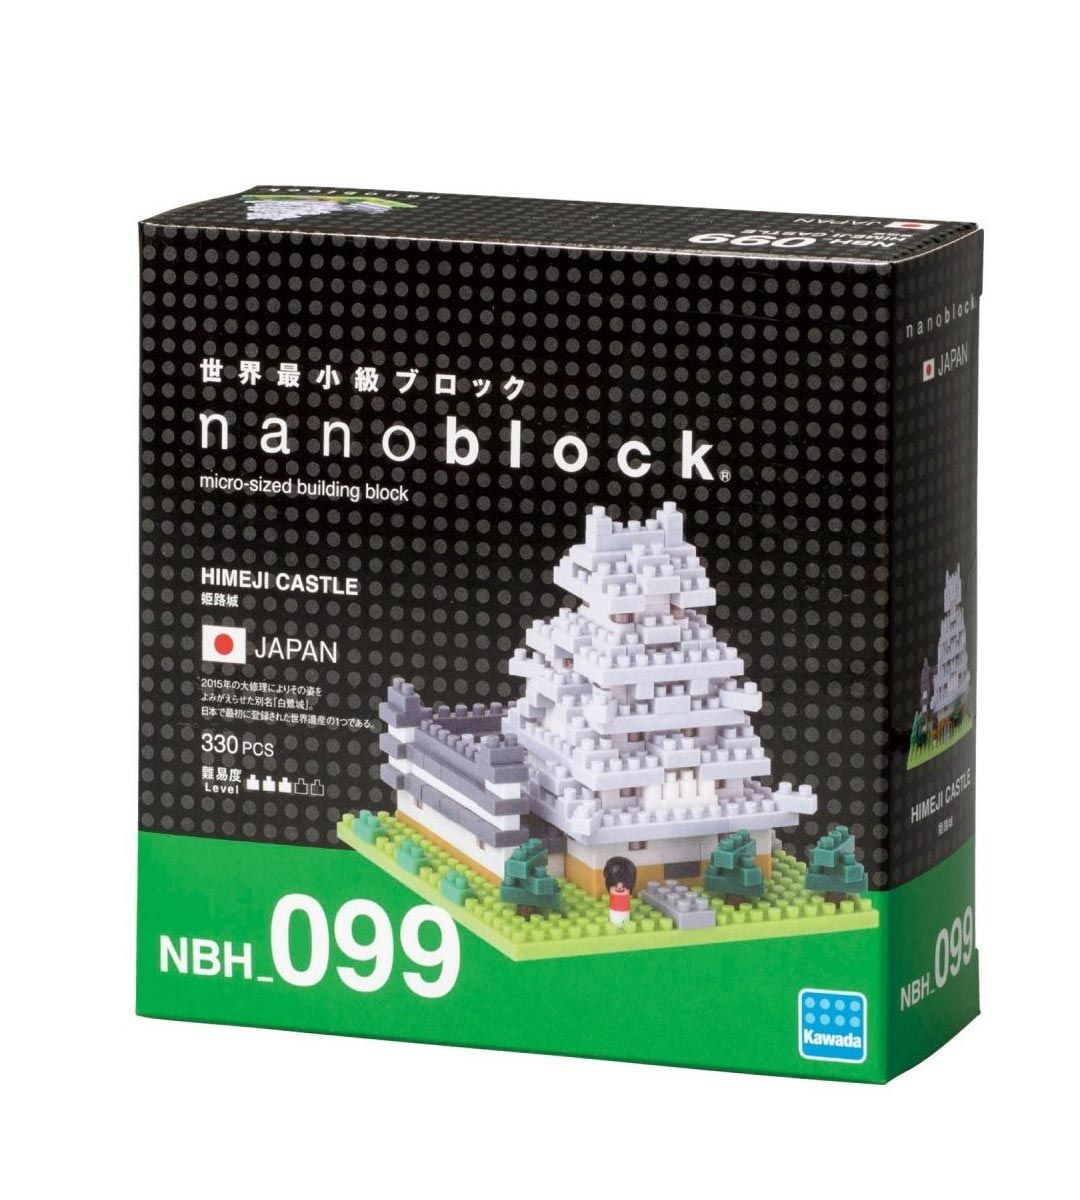 Nanoblock - Himeji castle